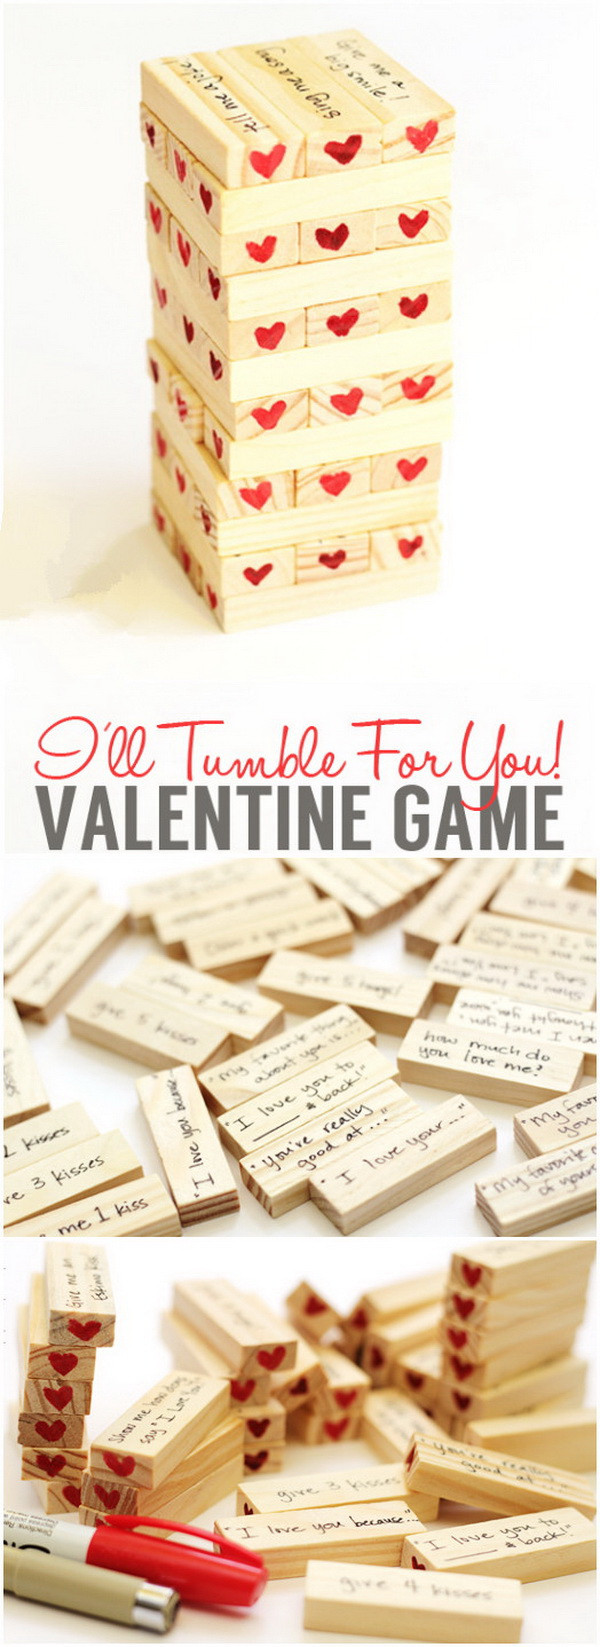 Valentine Day Gift Ideas For Boyfriend
 Easy DIY Valentine s Day Gifts for Boyfriend Listing More